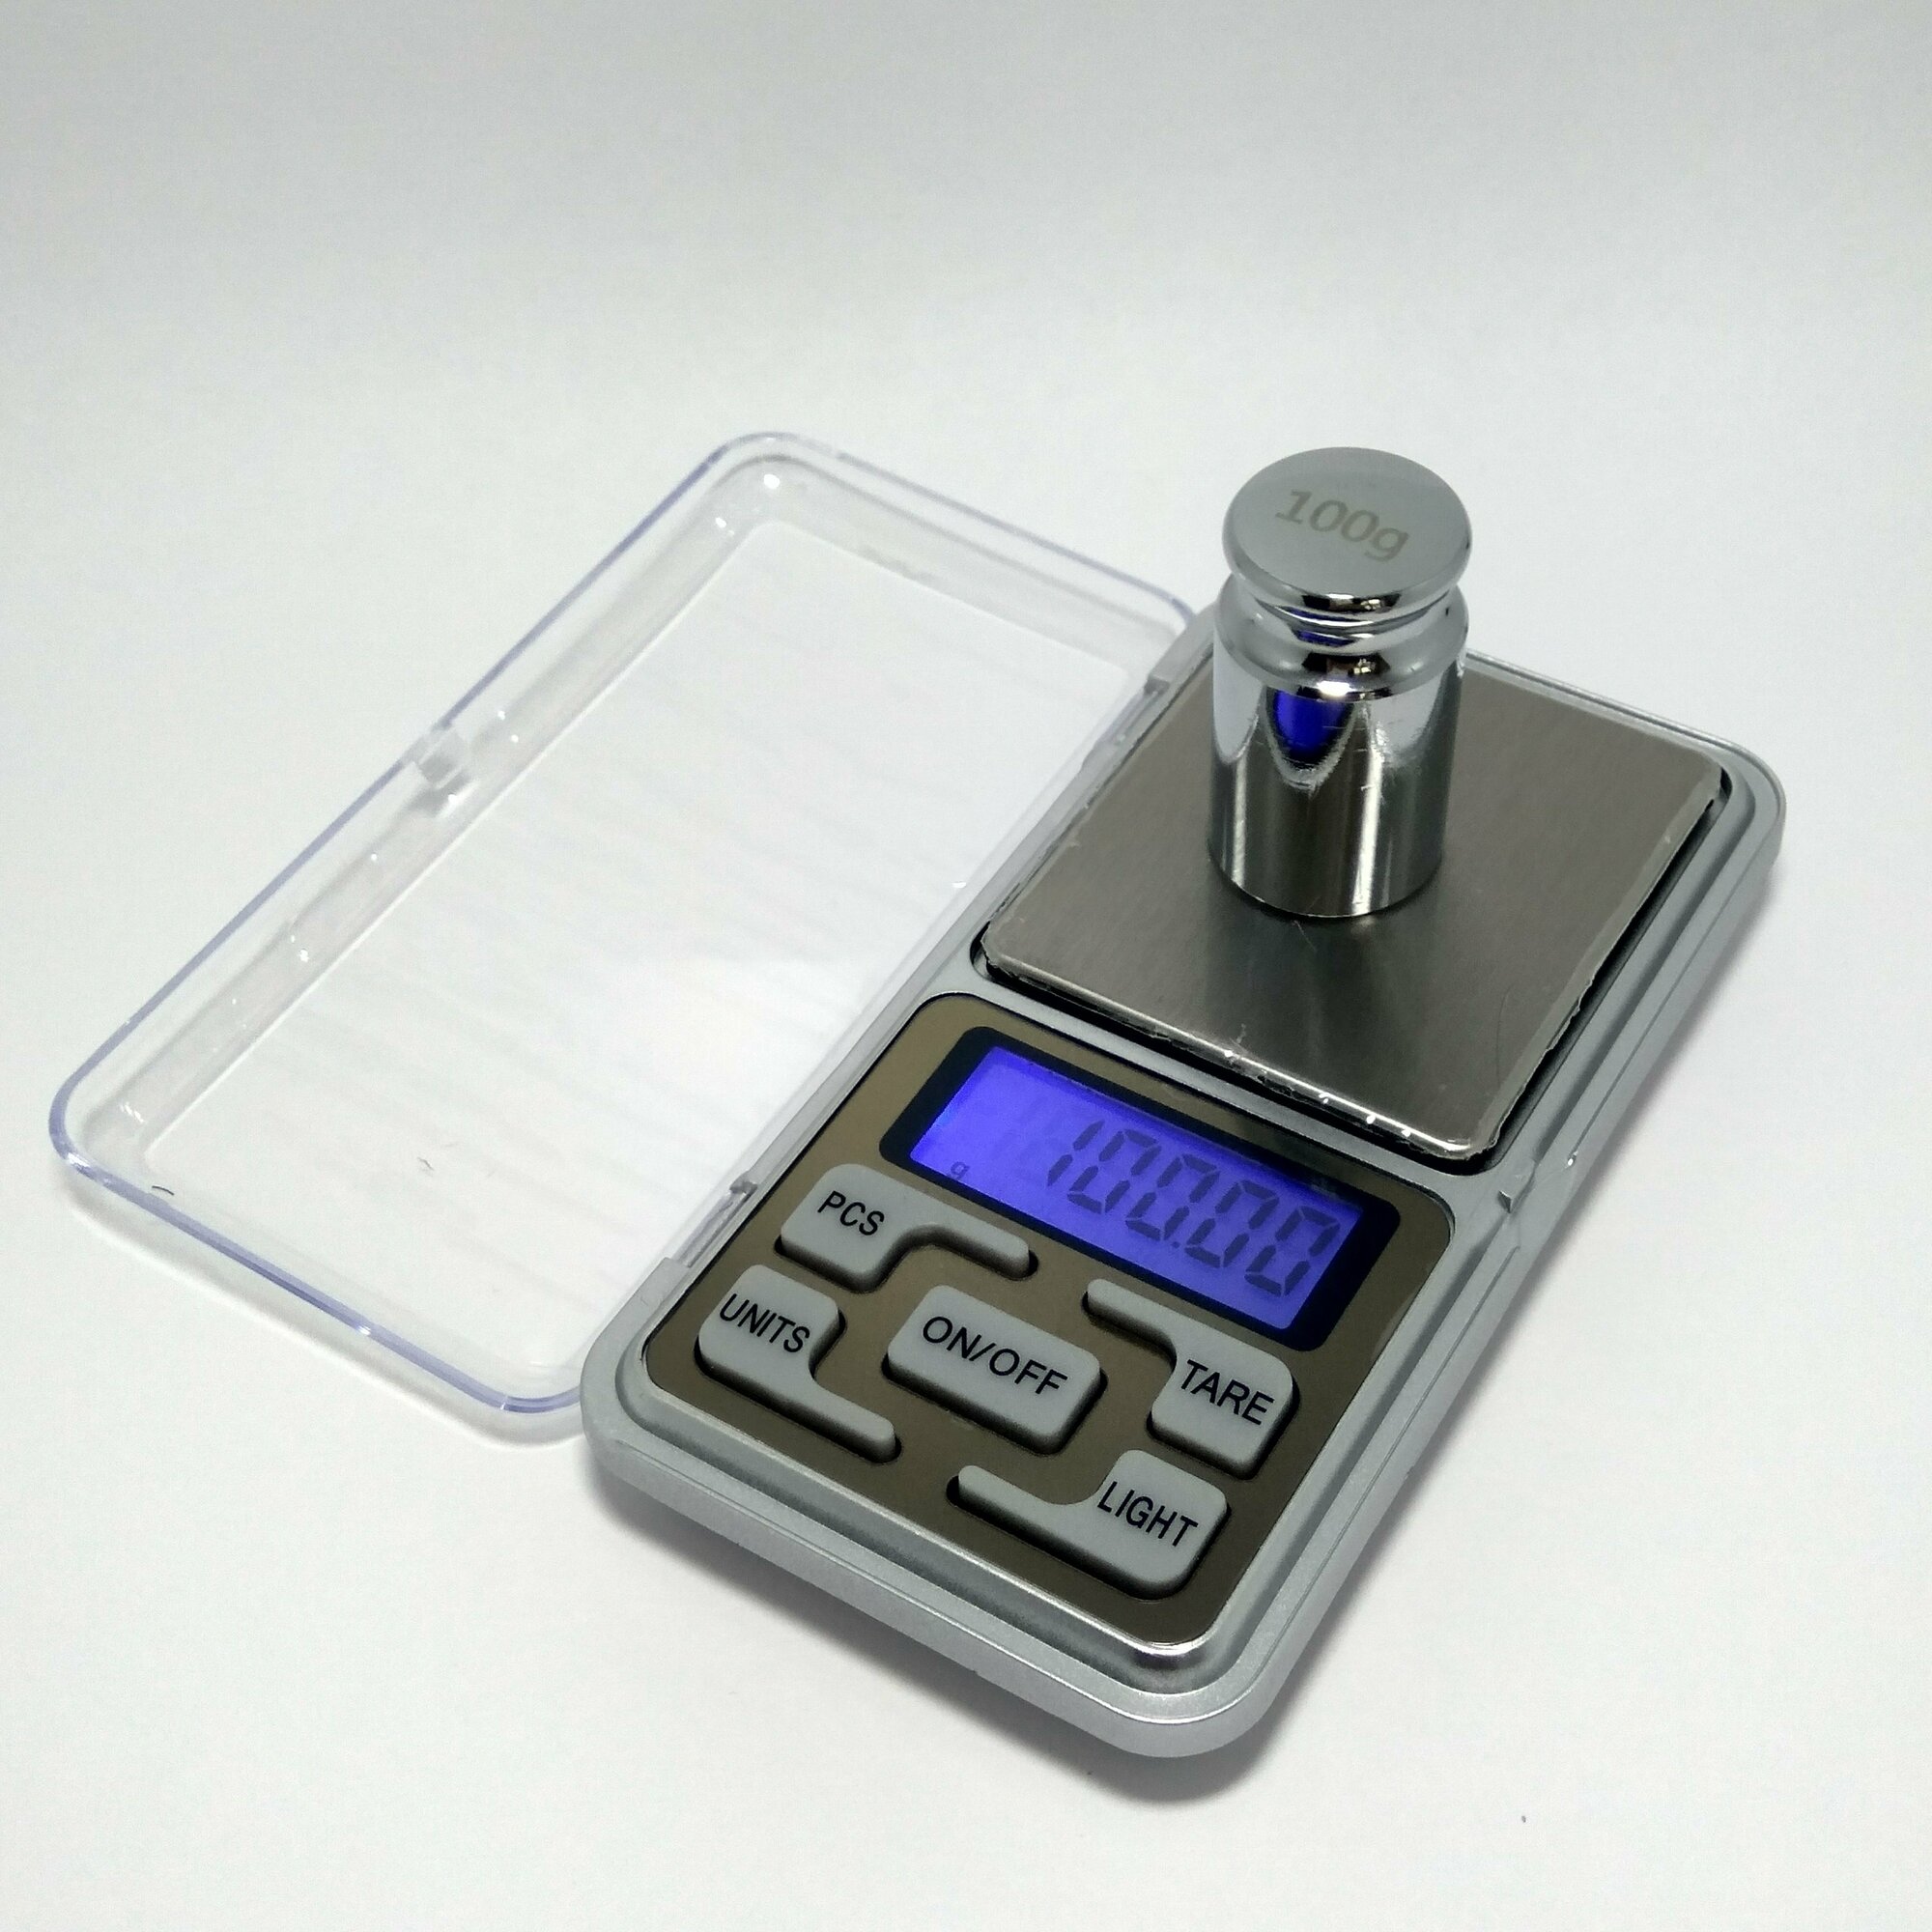 Весы ювелирные карманные электронные портативные с гирькой калибровочной, точность 0,01г до 100 гр.